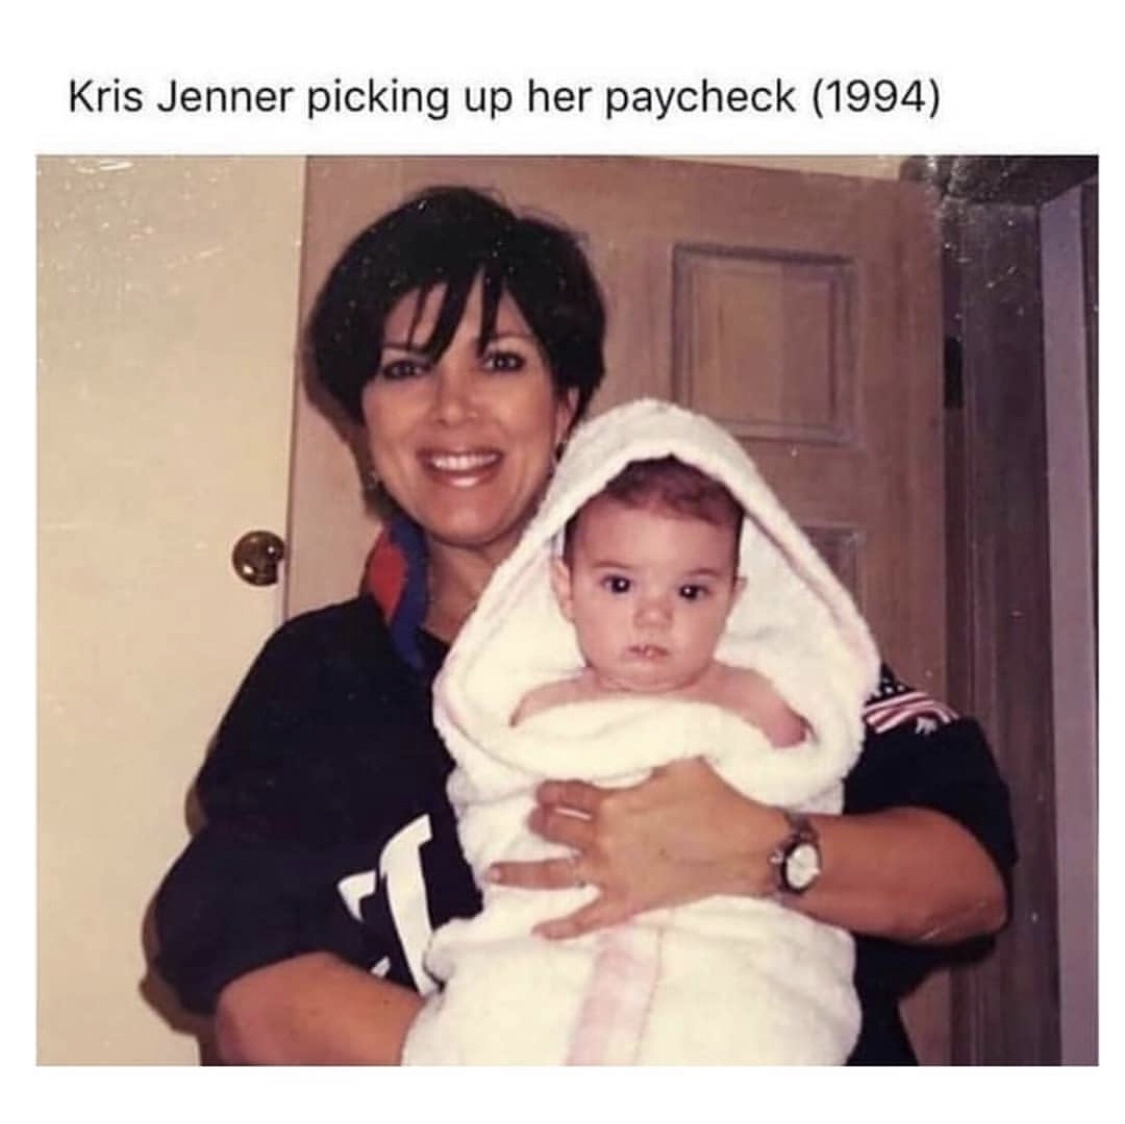 kris jenner picking up her paycheck - Kris Jenner picking up her paycheck 1994